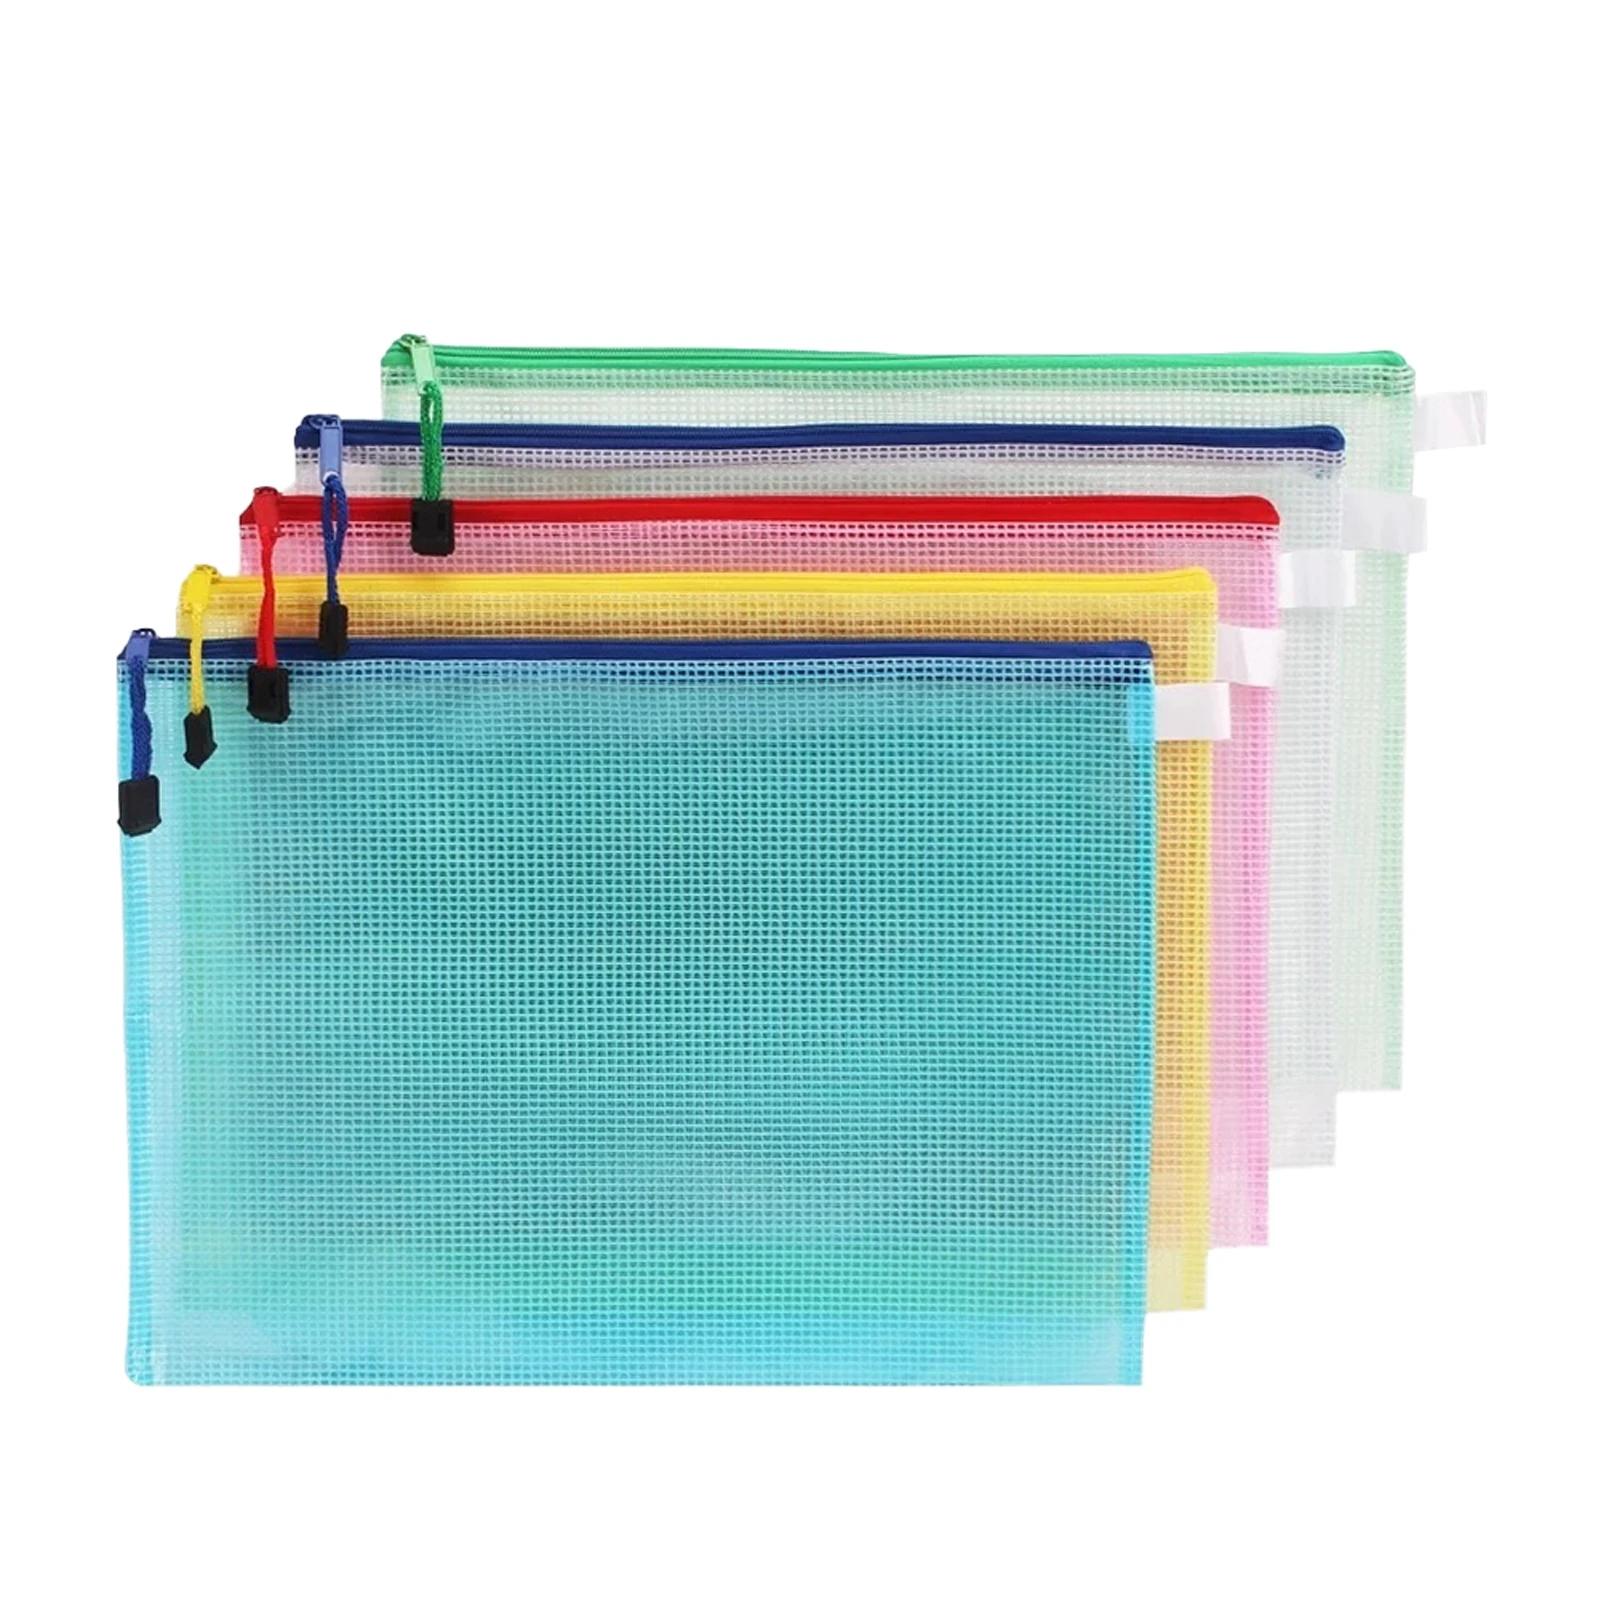 투명 메쉬 파일 폴더 대용량 방수 문서 가방, 집 여행 지퍼 지갑, A4 학교 PVC 휴대용 사무실 스토리지, 5 개